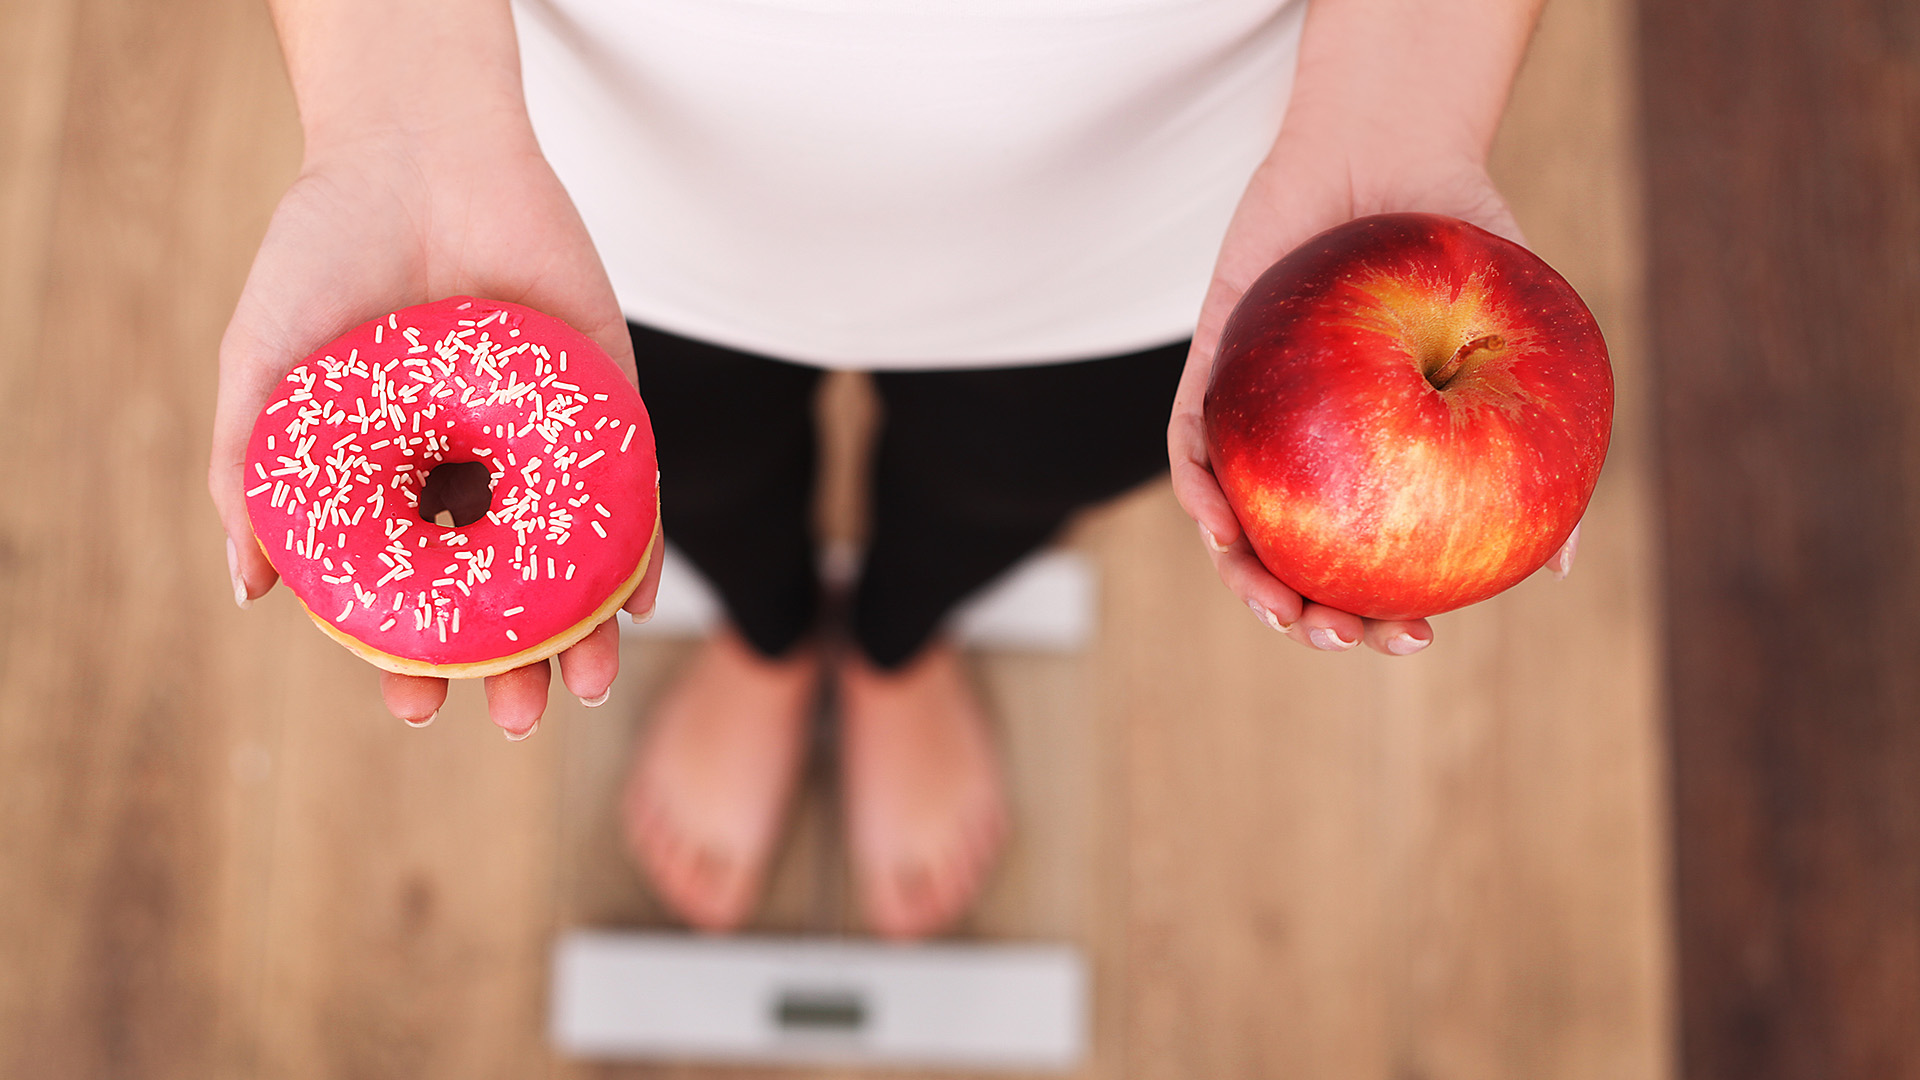 La buena alimentación para prevenir la obesidad comienza desde chico (Shutterstock)